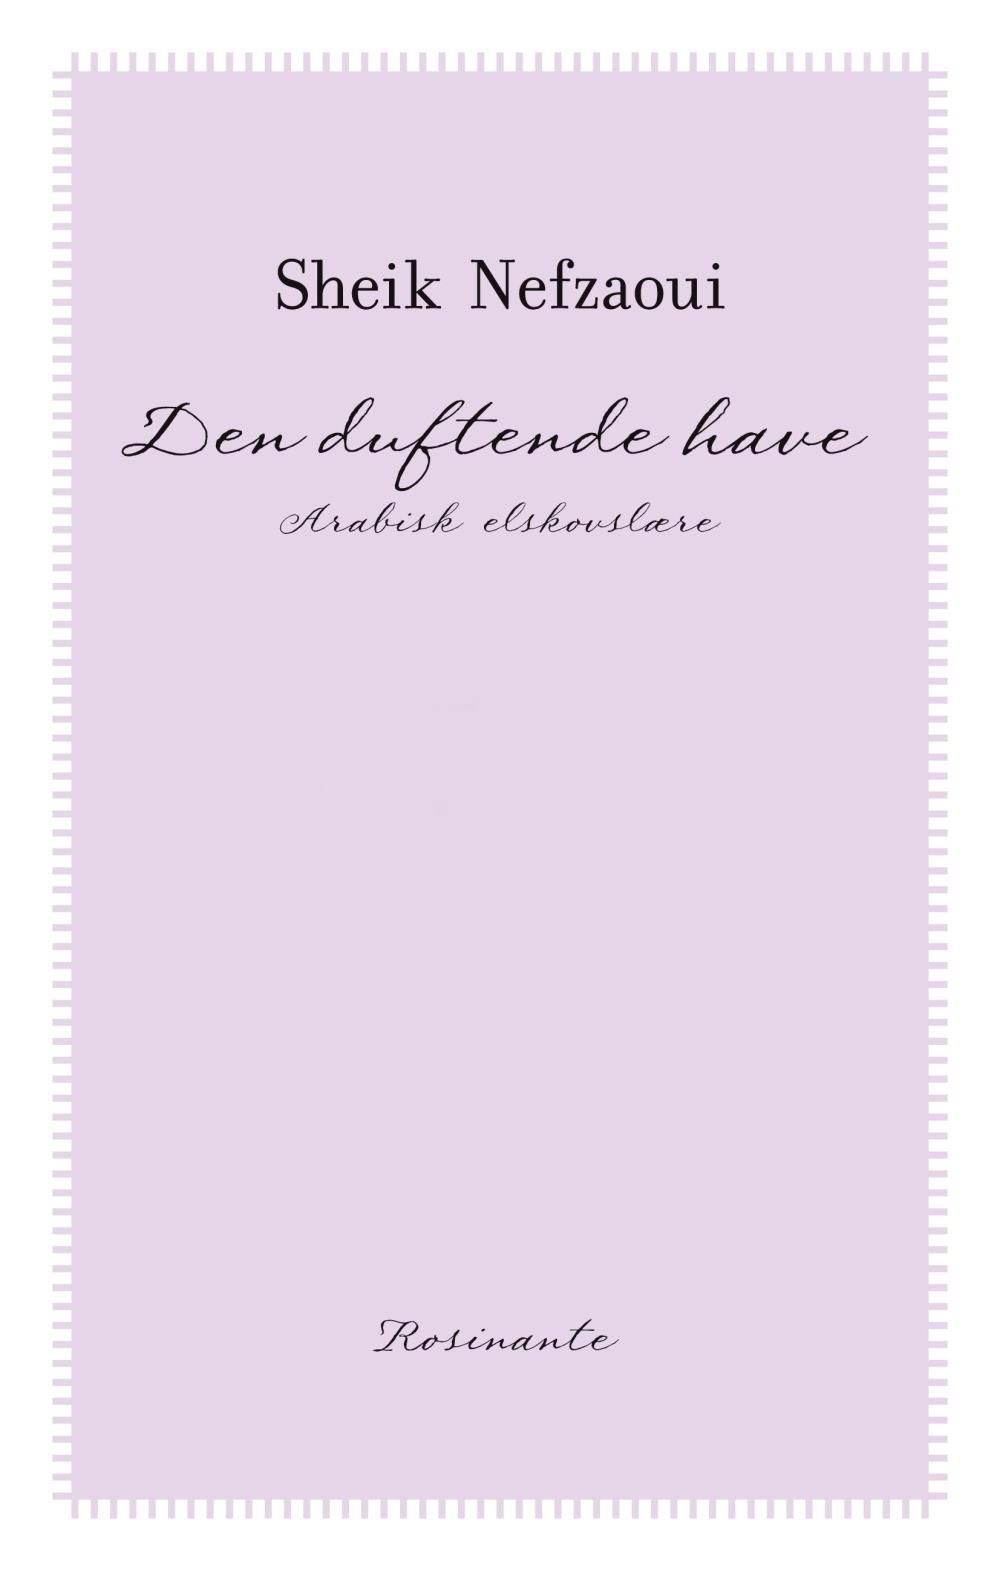 Den duftende have, e-bog af Sheik Nefzaoui